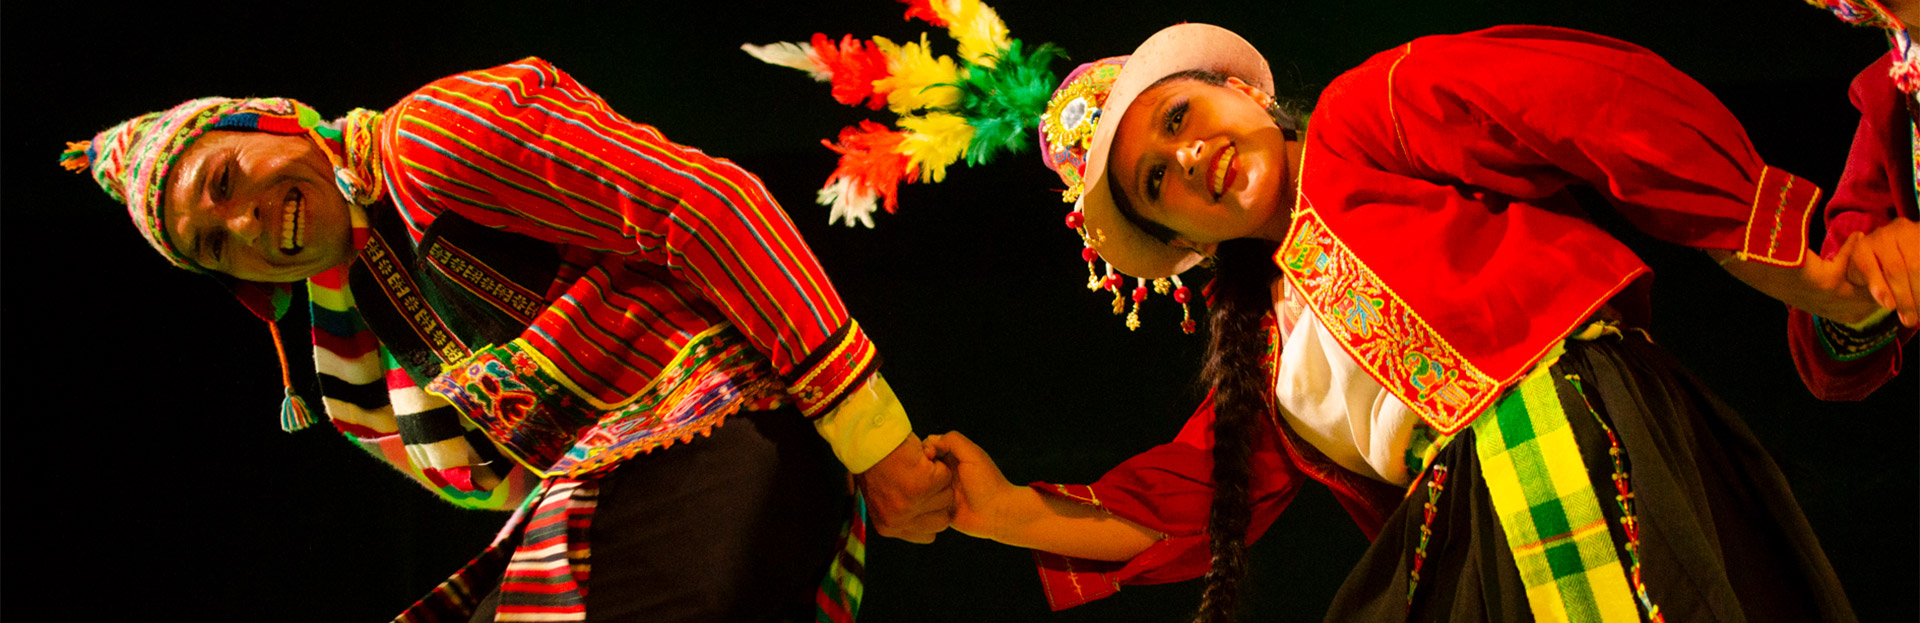 Danzas folklóricas bolivianas